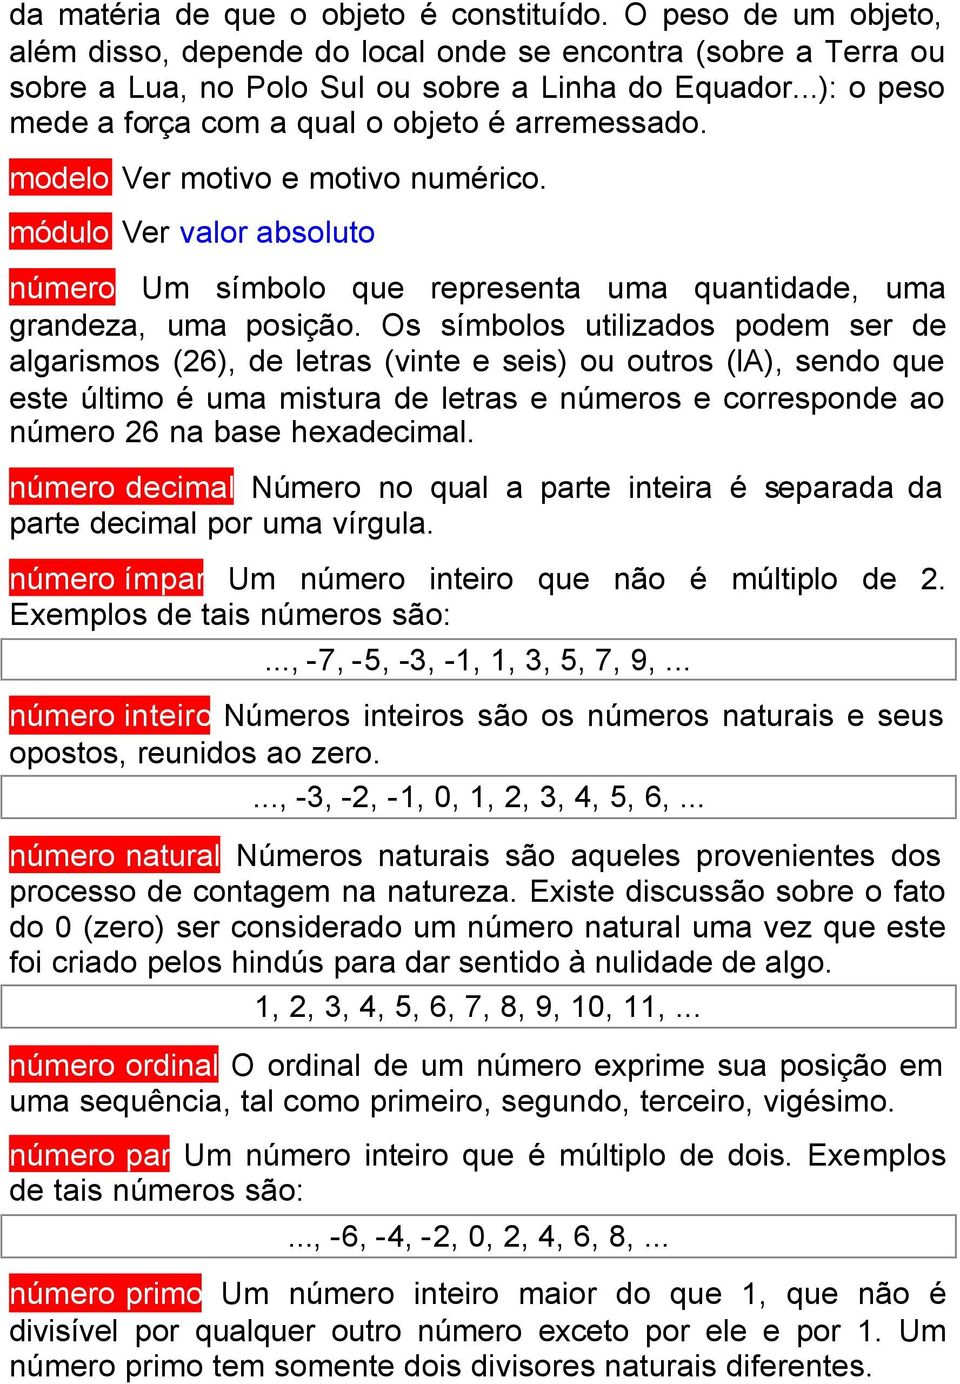 Os símbolos utilizados podem ser de algarismos (26), de letras (vinte e seis) ou outros (la), sendo que este último é uma mistura de letras e números e corresponde ao número 26 na base hexadecimal.